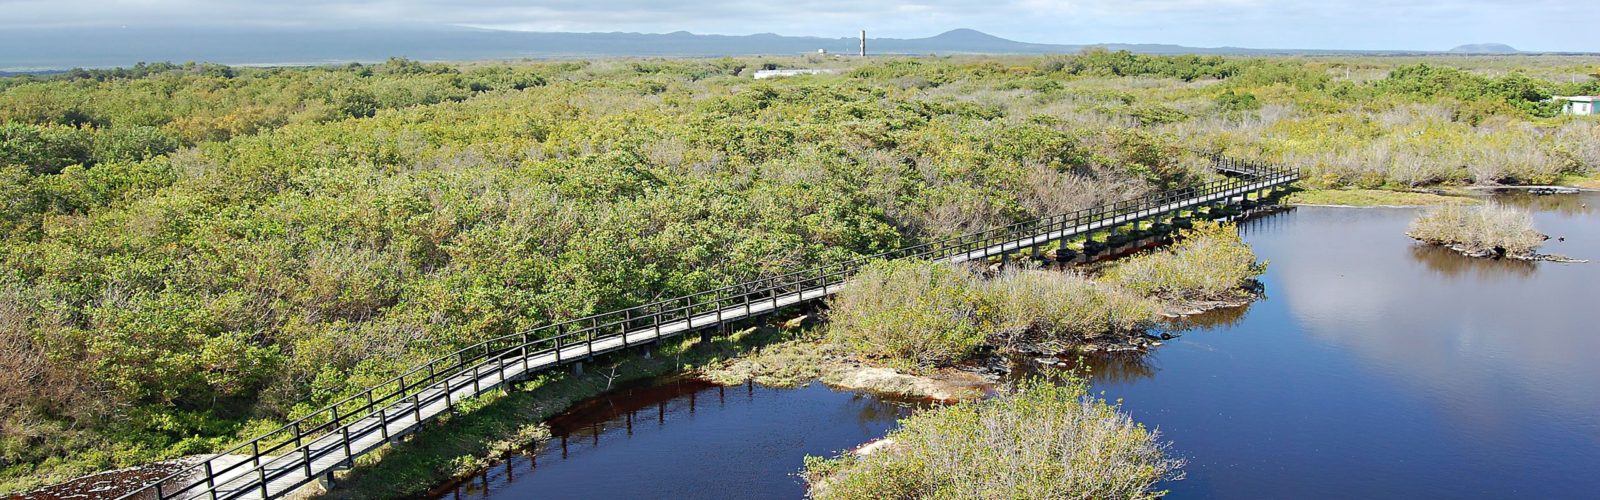 iguana-crossing-isabela-galapagos-islands